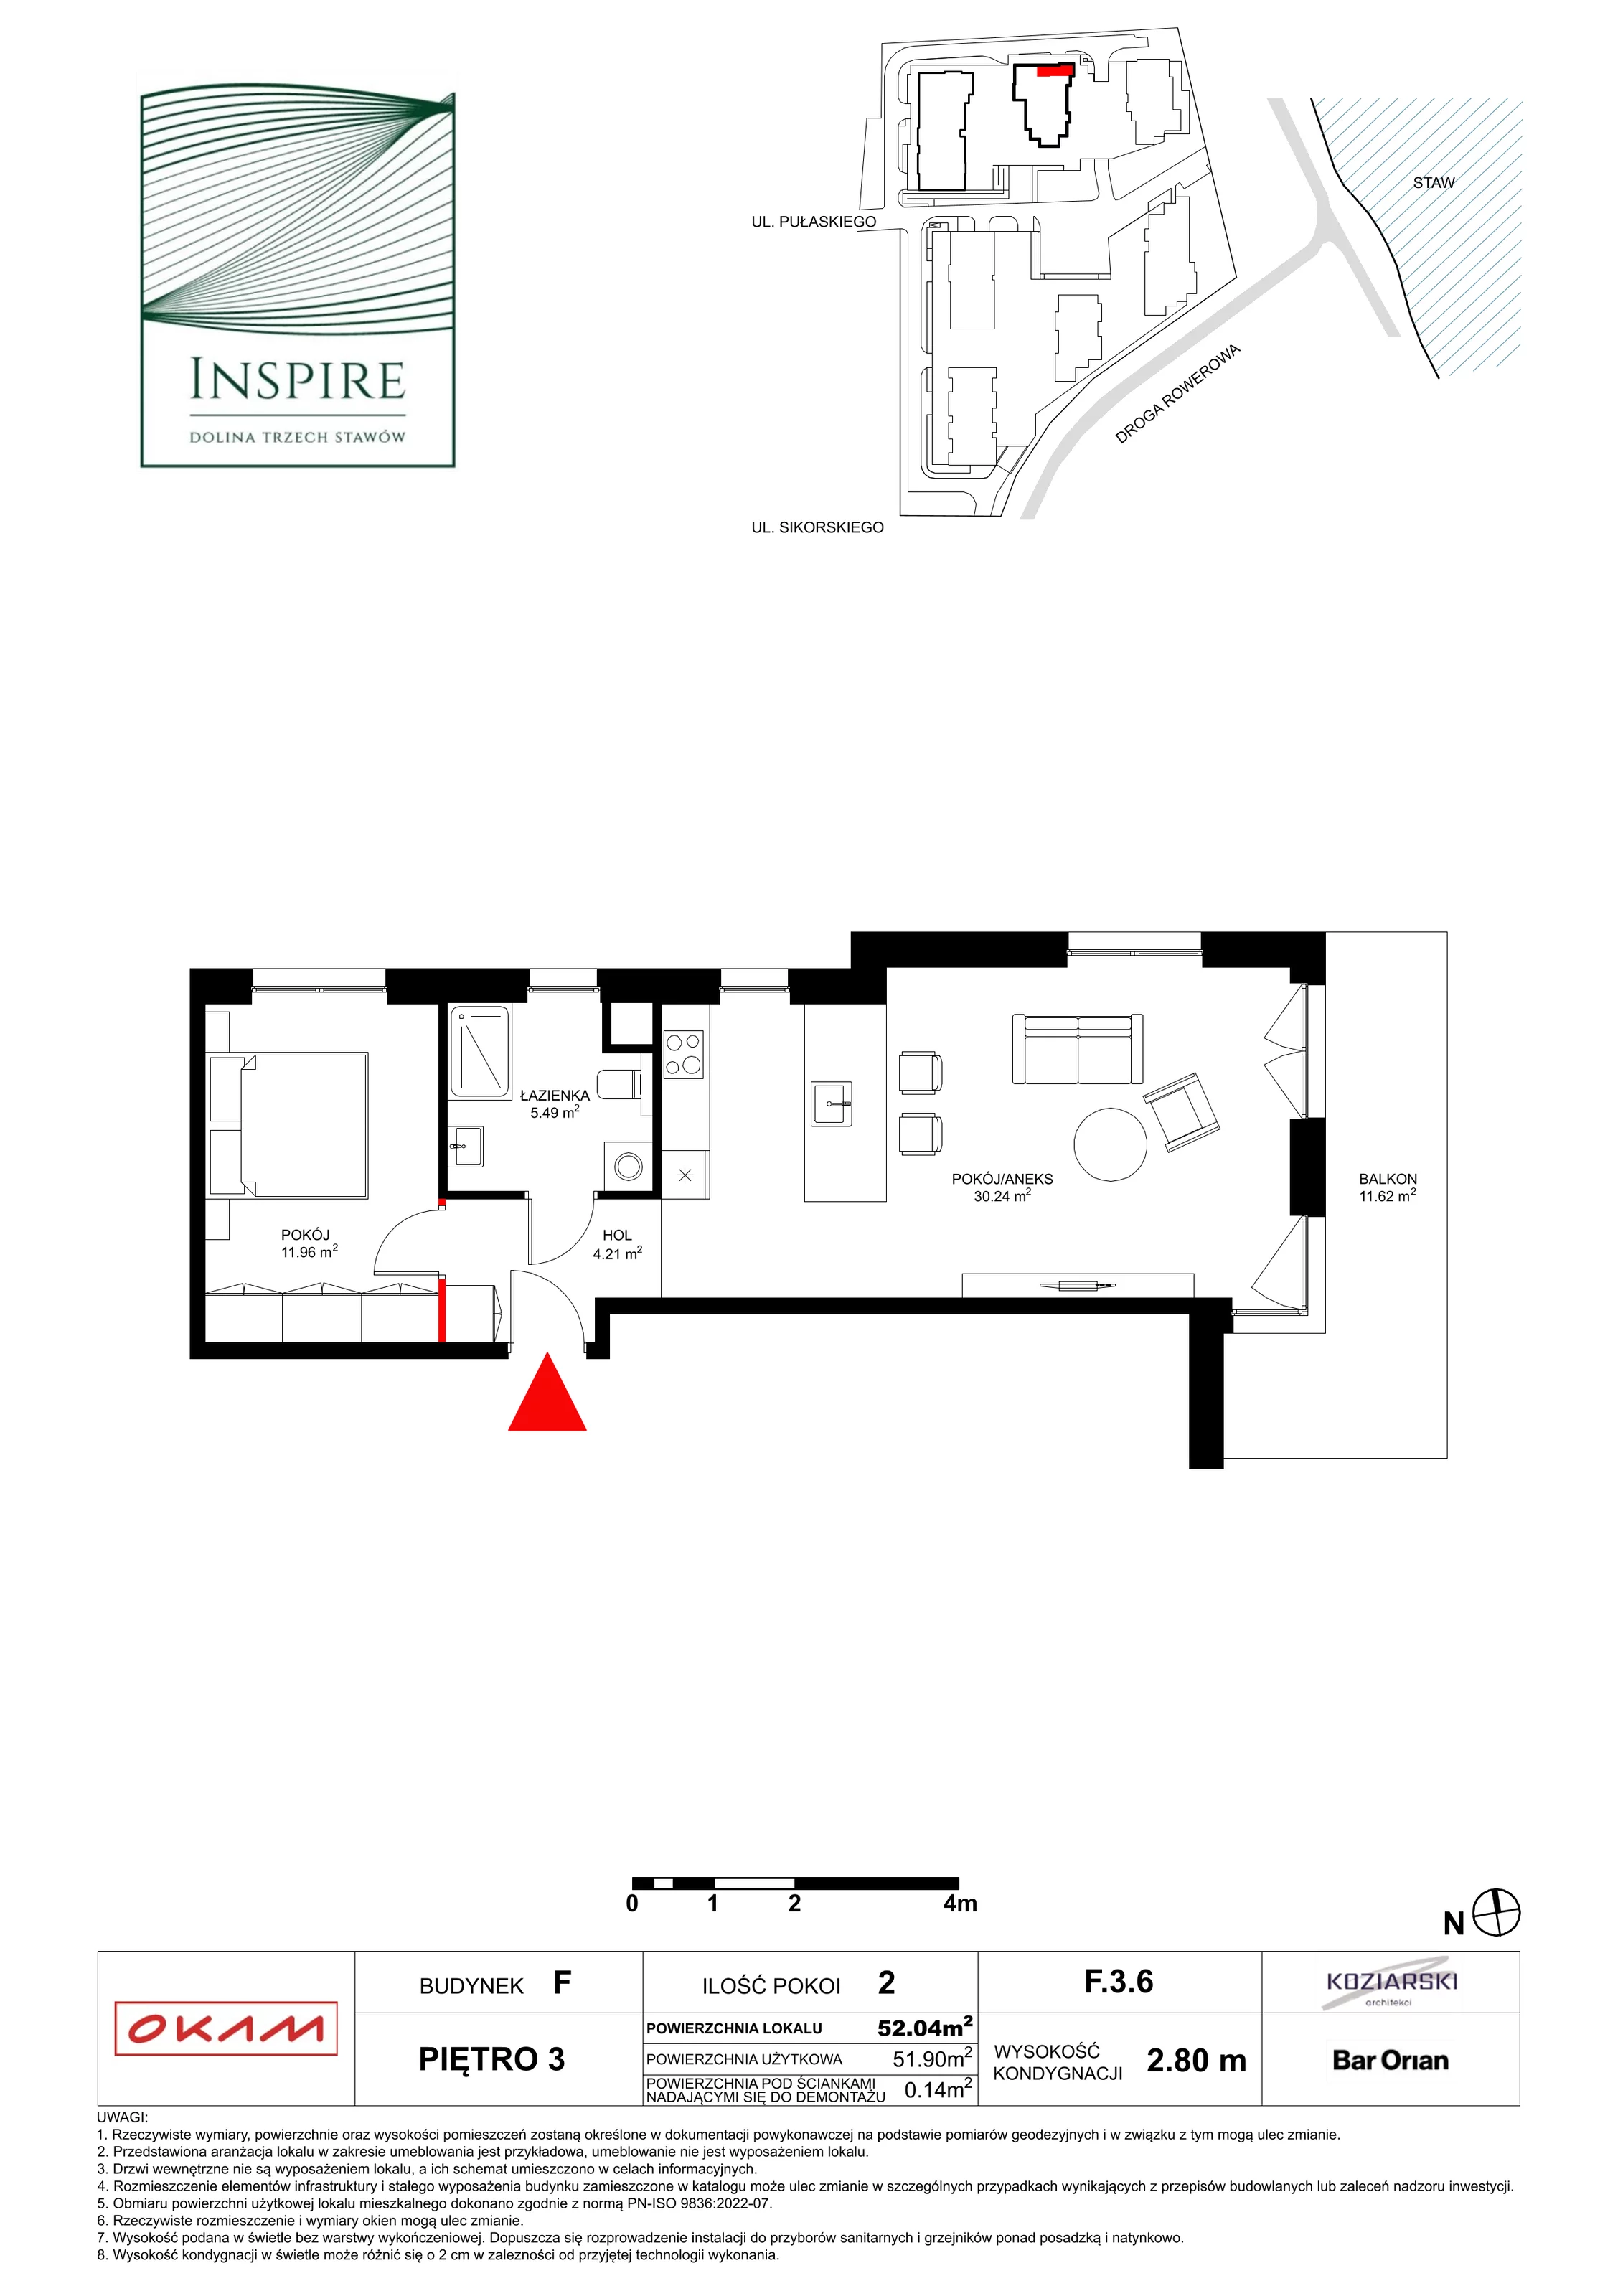 Apartament 51,40 m², piętro 3, oferta nr F.3.6, Inspire, Katowice, Osiedle Paderewskiego-Muchowiec, Dolina Trzech Stawów, ul. gen. Sikorskiego 41